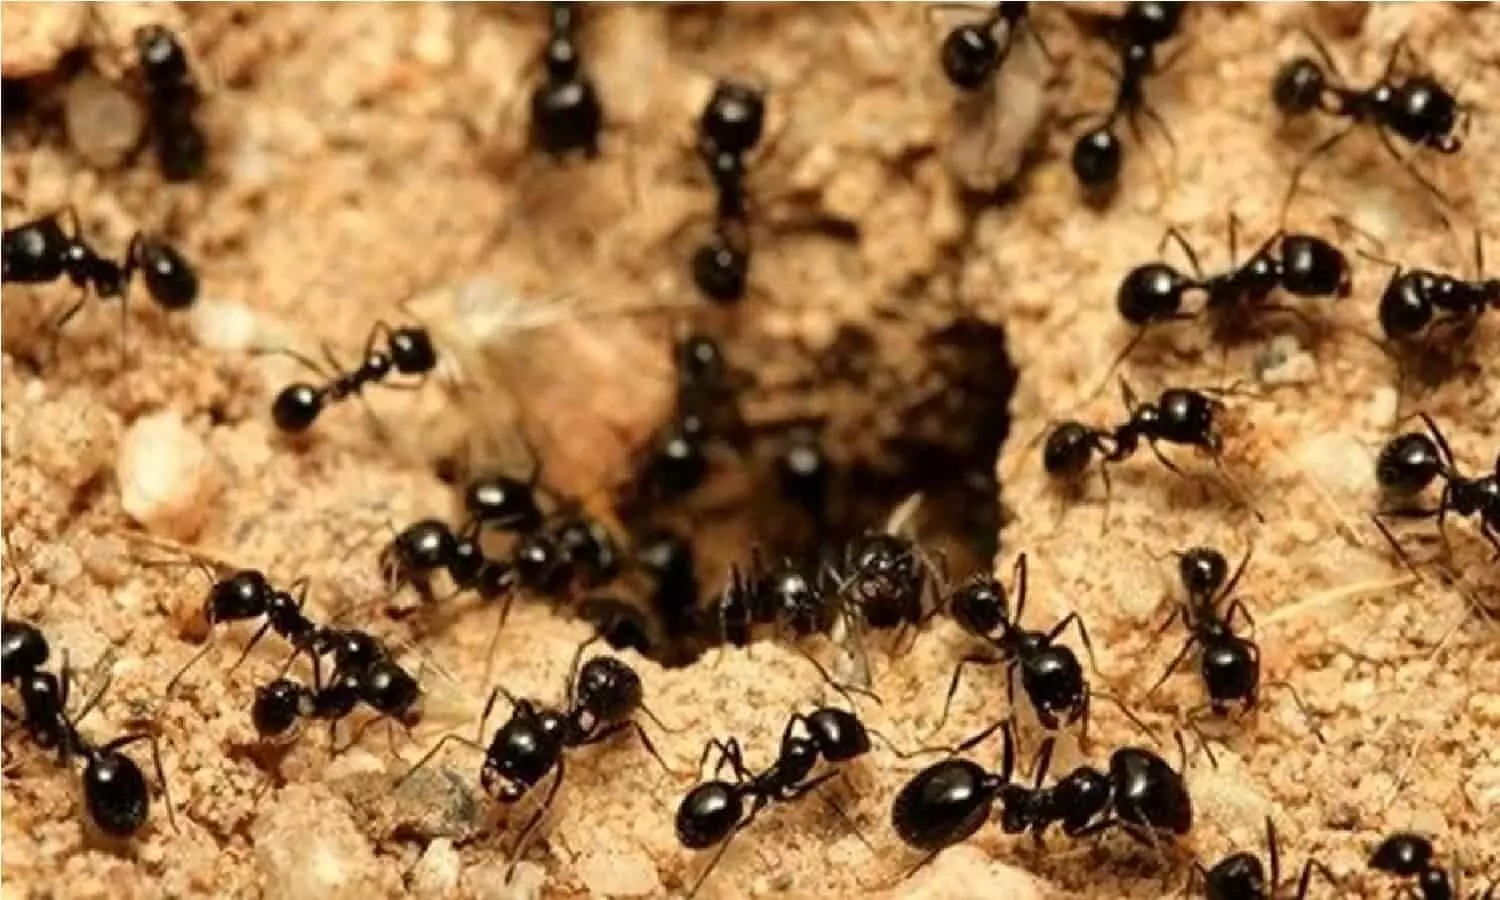 Ants In The House: घर में दिखे ऐसी चीटियां तो समझ ले जिंदगी में होने वाला है कुछ ऐसा..